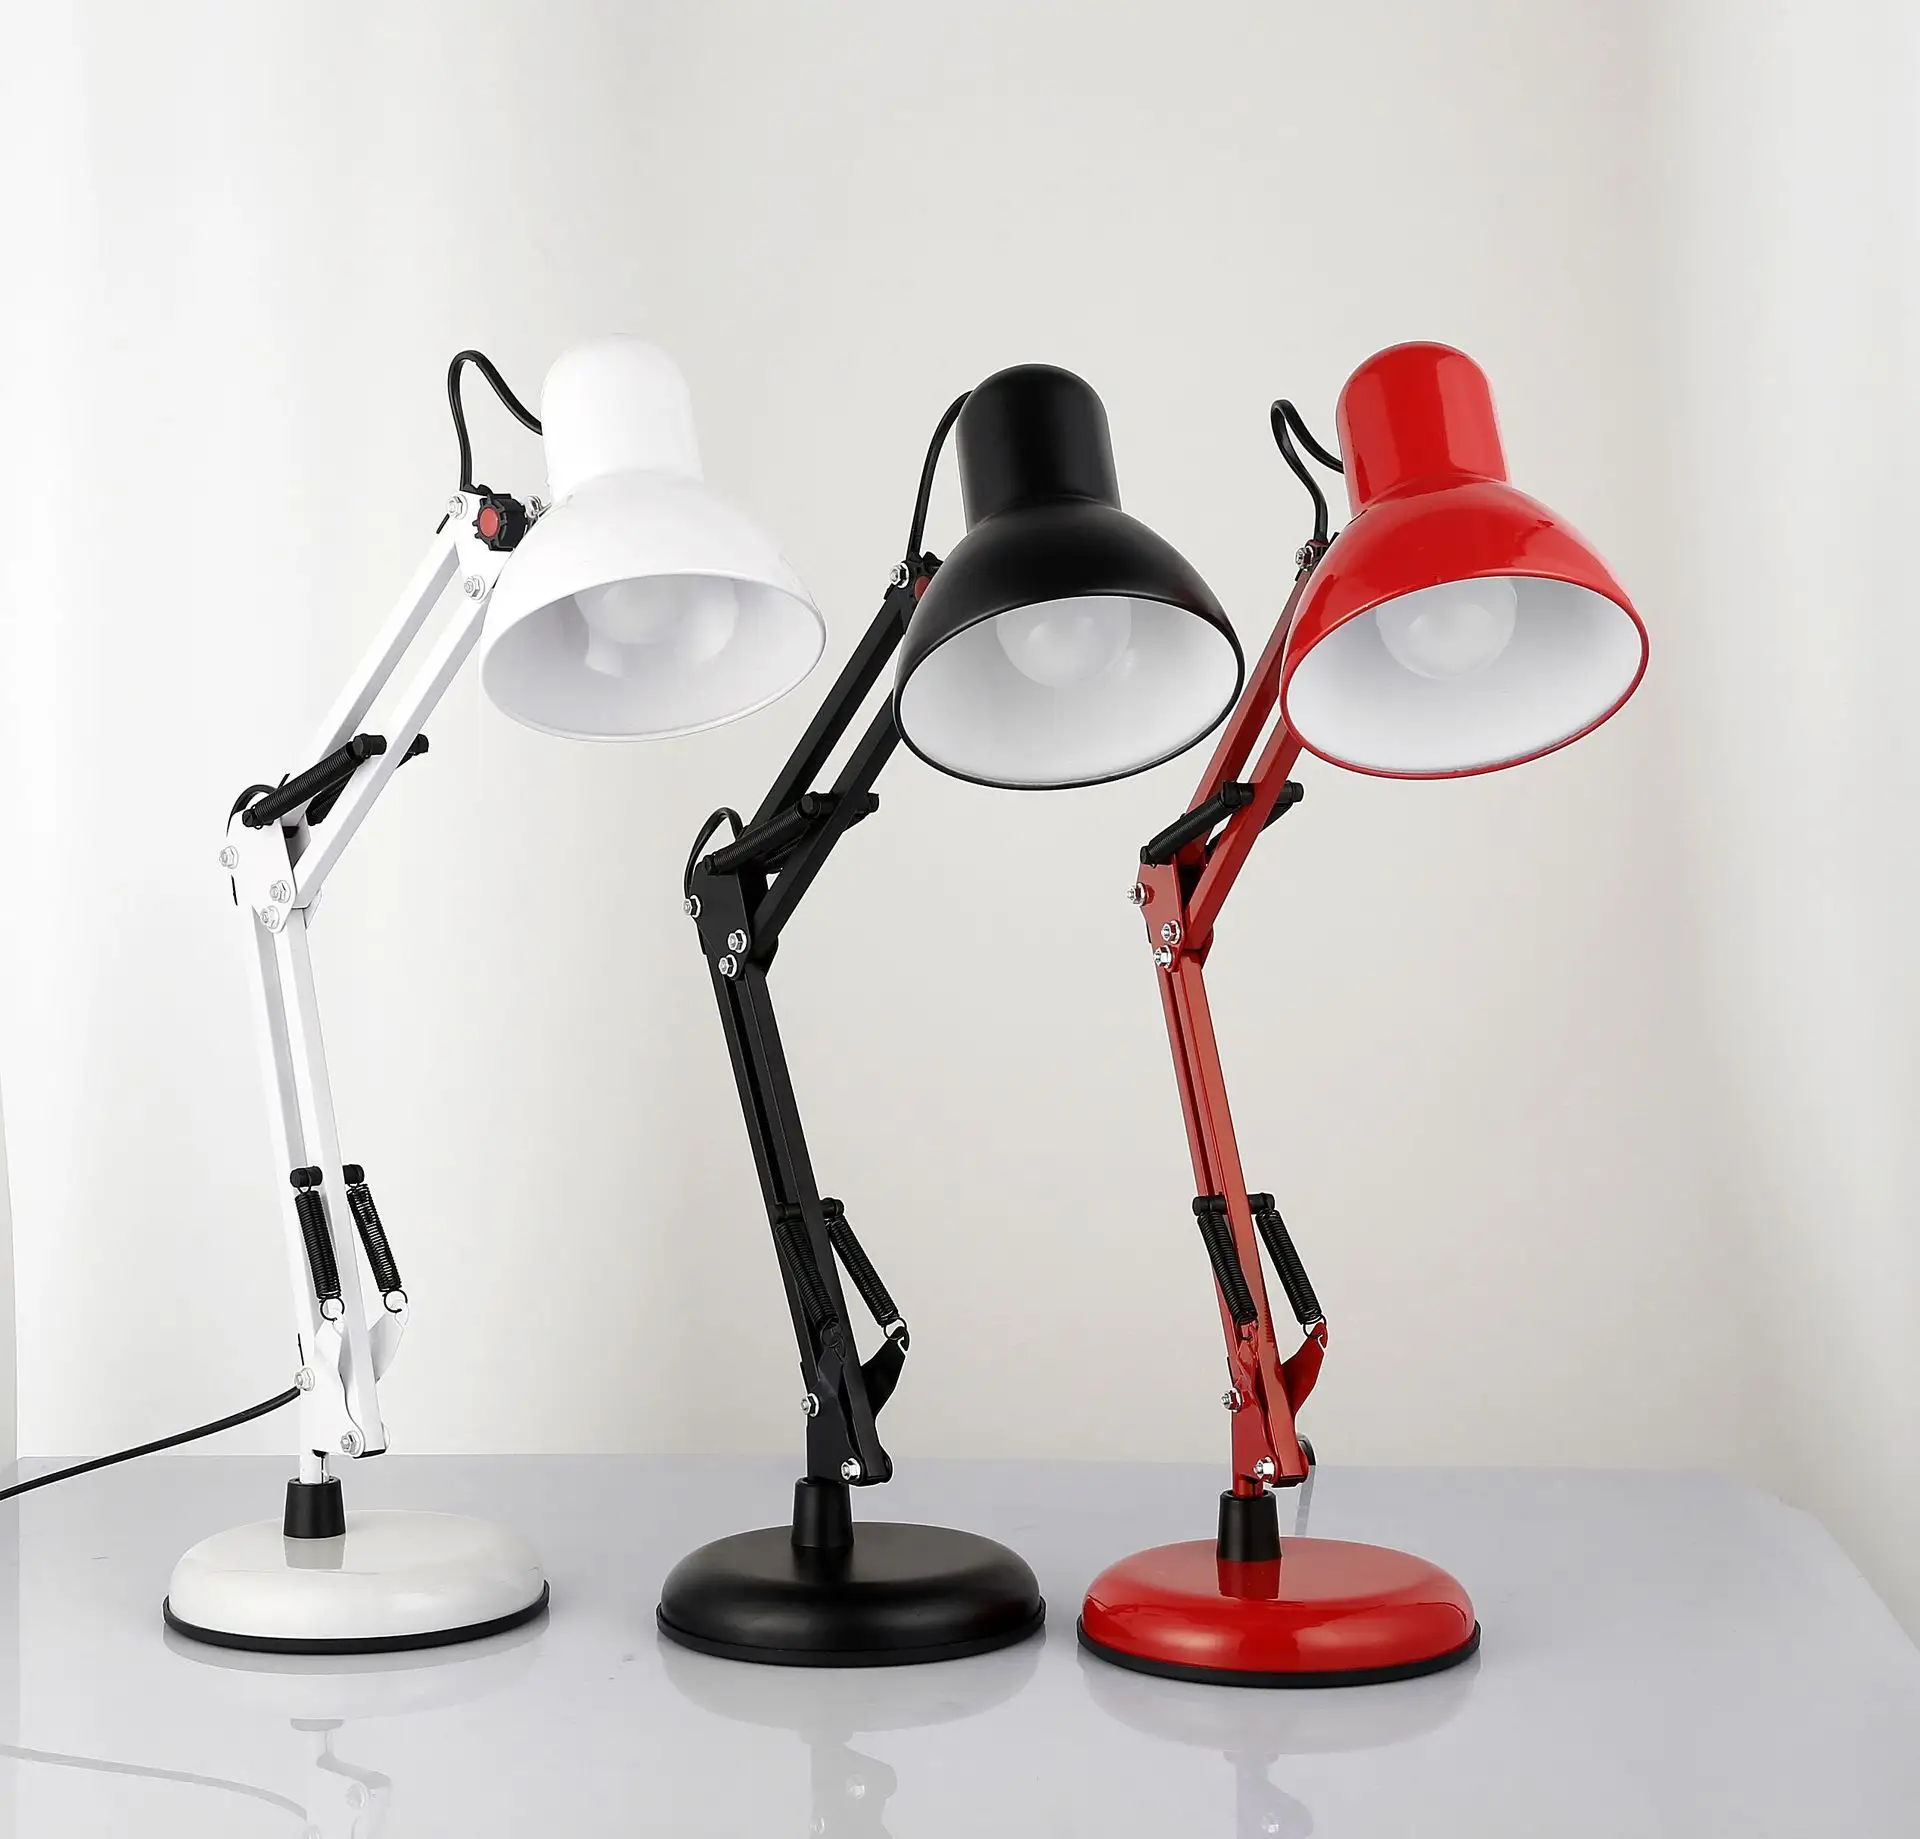 Hotsale nuova lampada da tavolo per unghie regolabile a 360 gradi lampada da tavolo pieghevole a Led per salone di bellezza